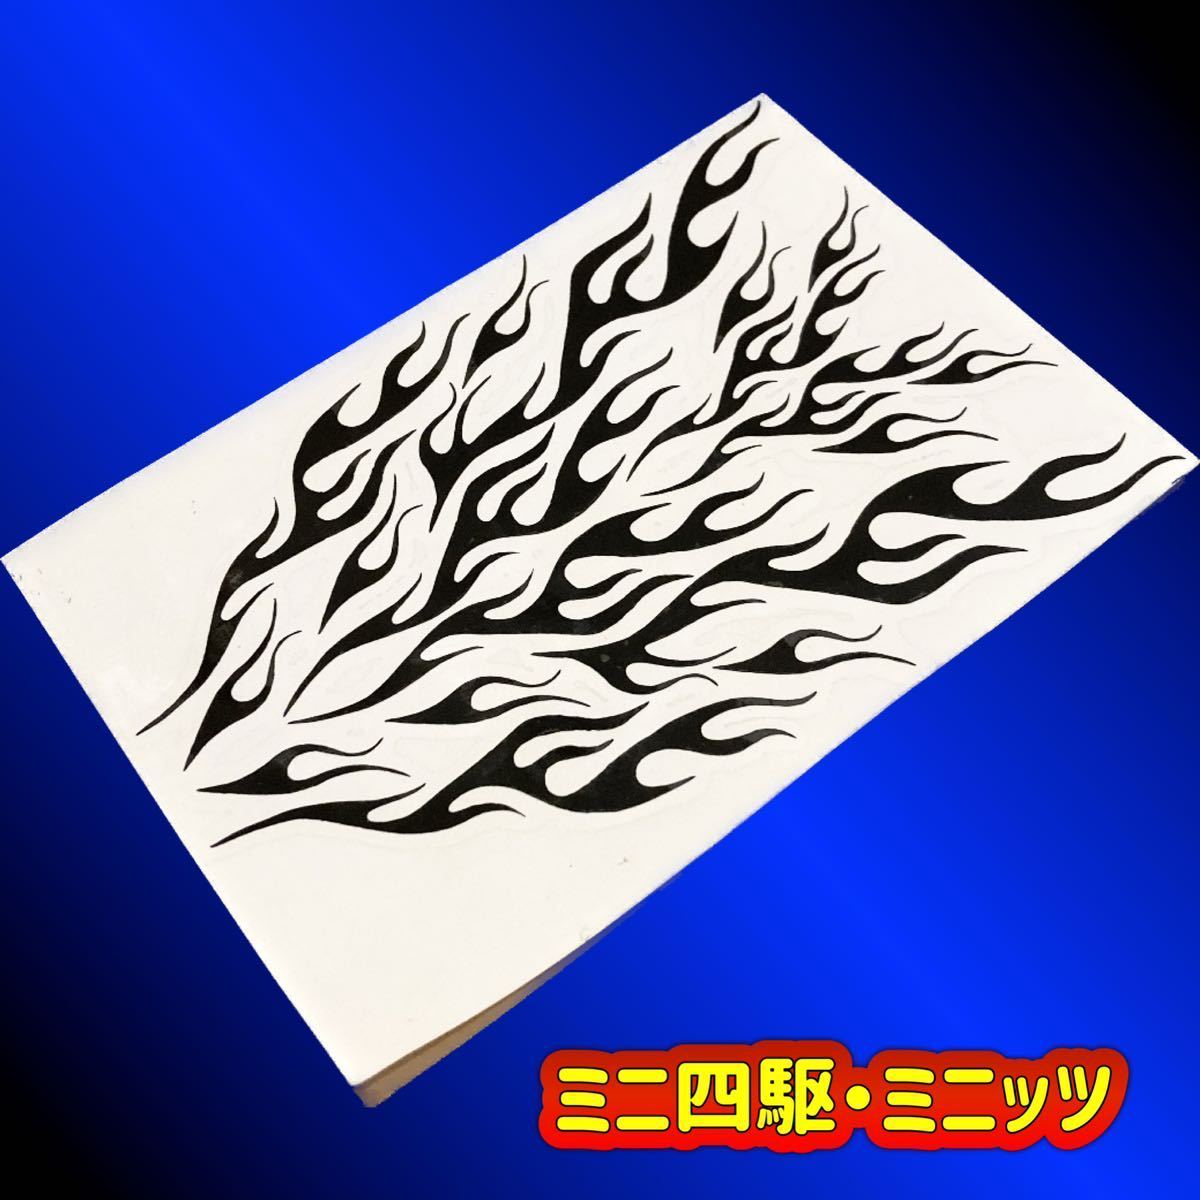 【ミニ四駆・ミニッツ】ファイヤパターン ステッカーセット Rタイプ マスキングの画像1